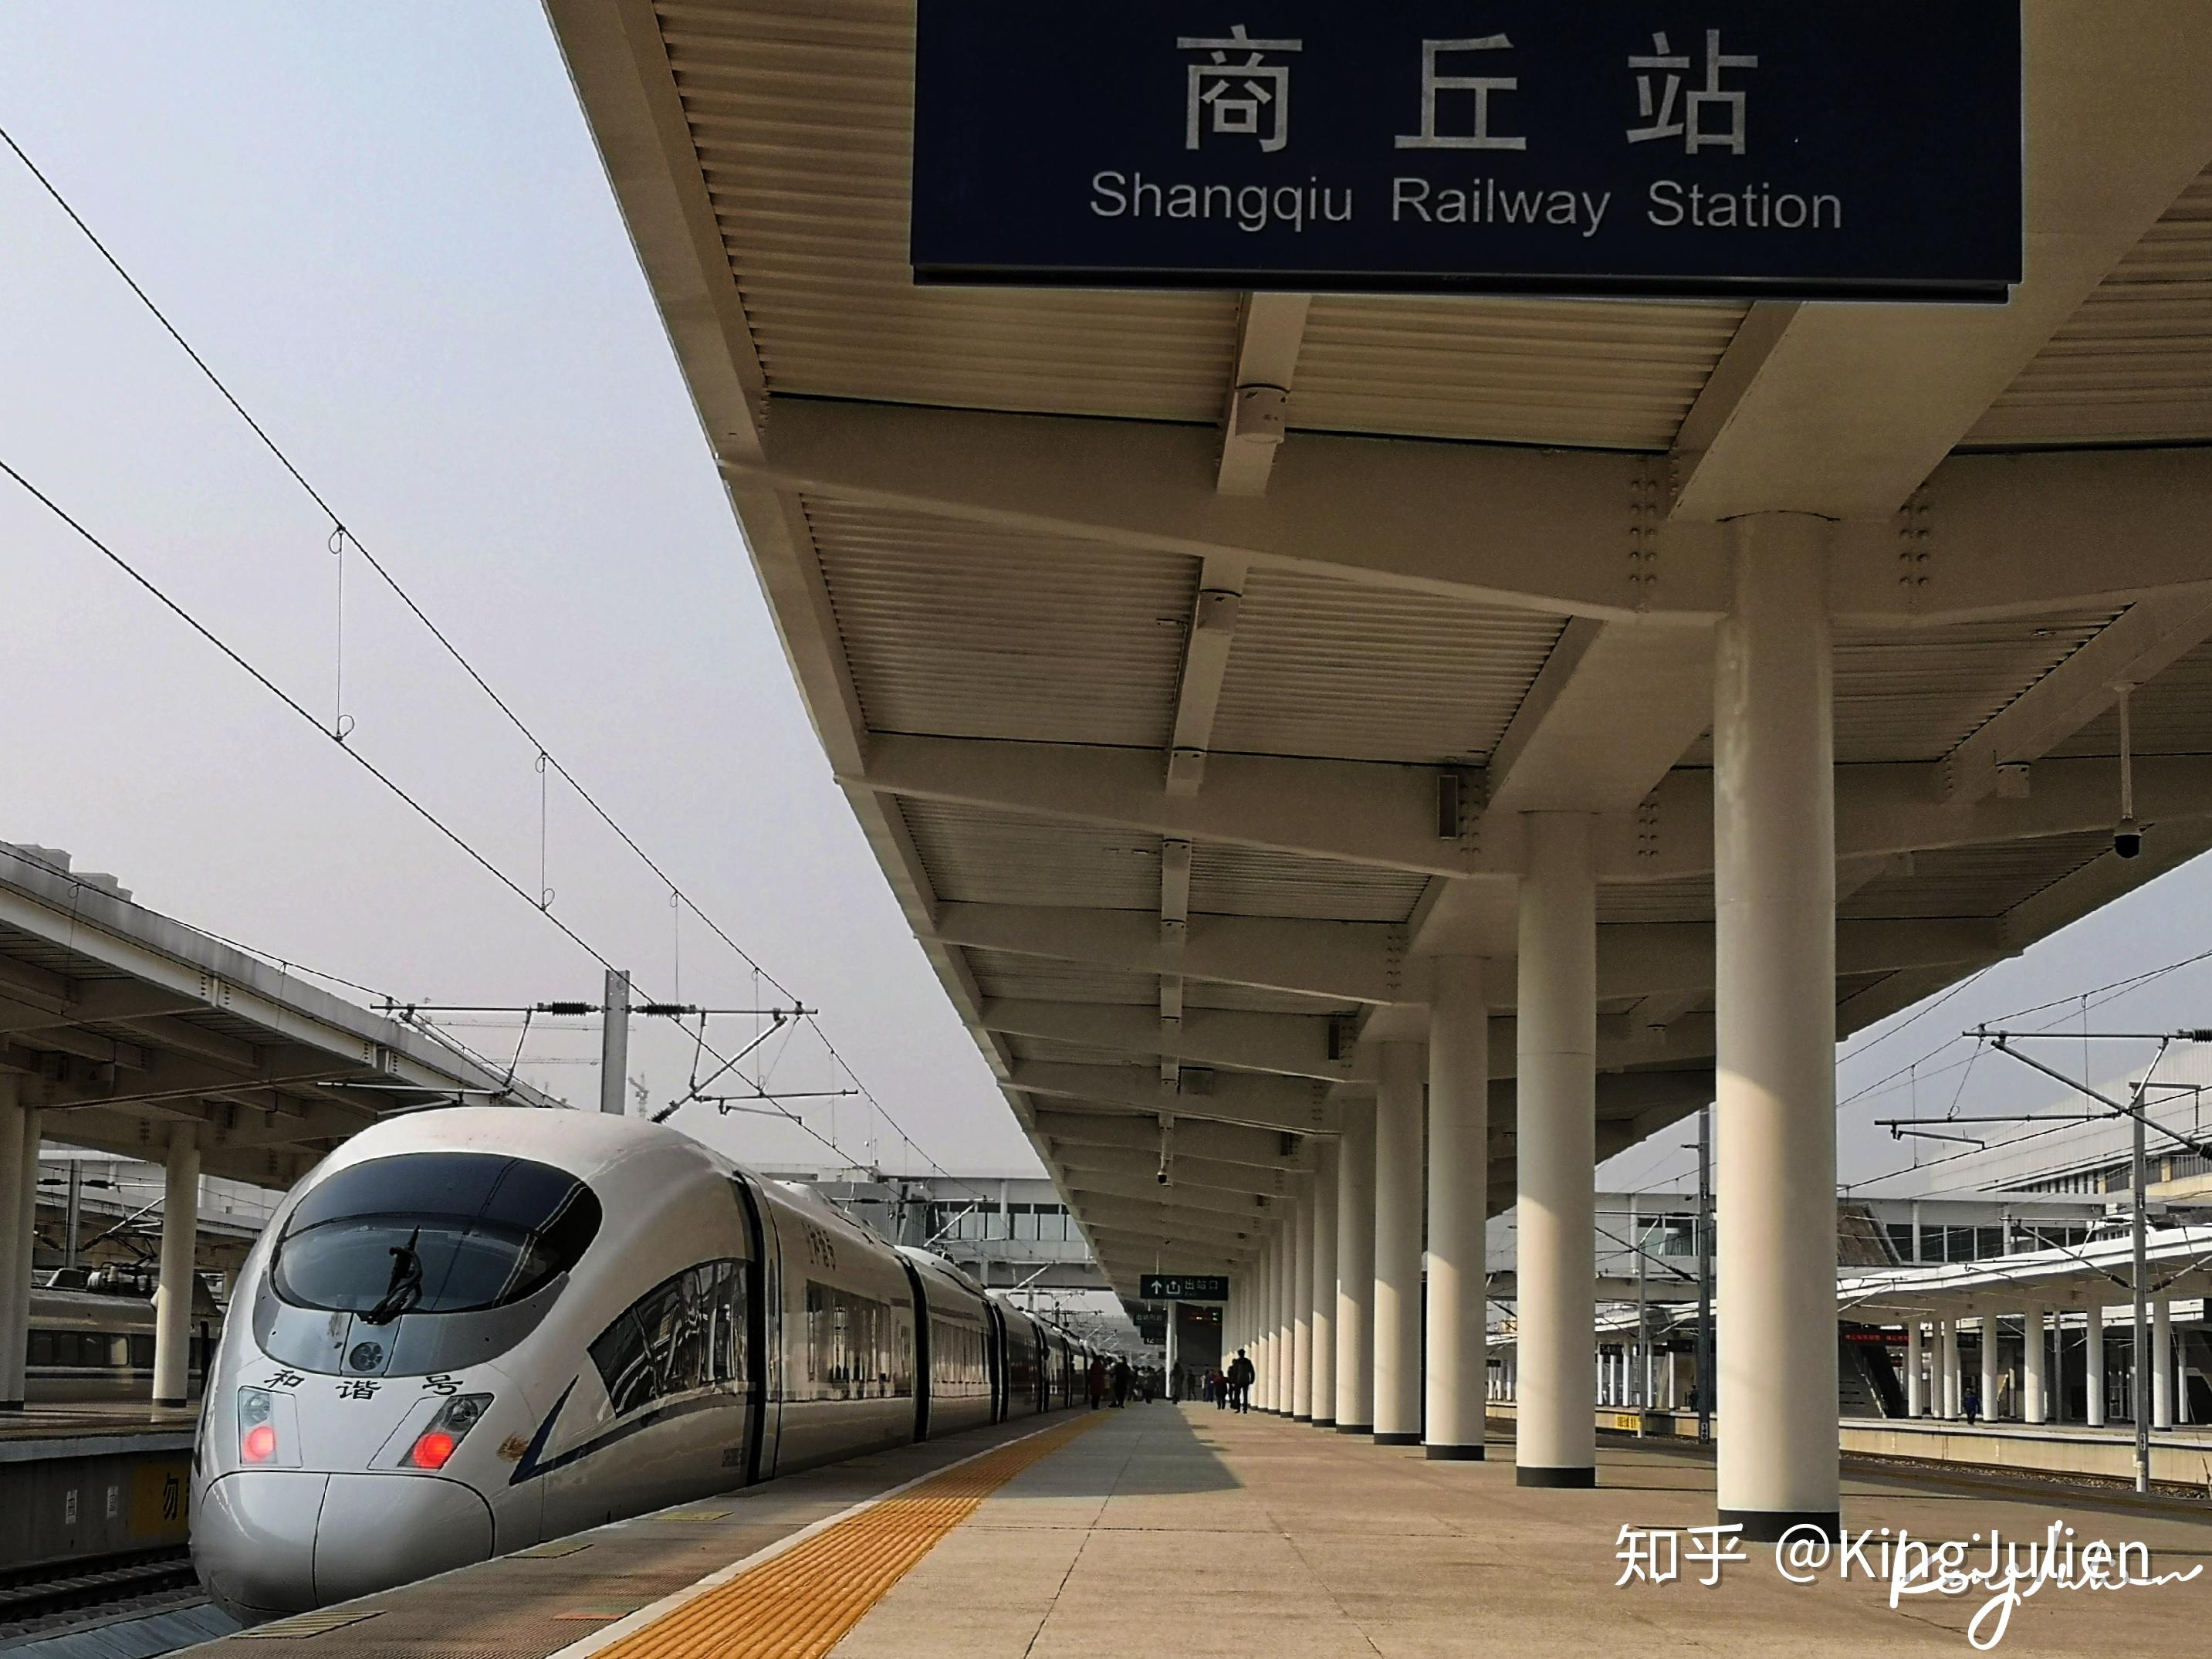 商丘站原先为陇海/京九线沿线车站,为普速站,后由于徐兰高速线也接入